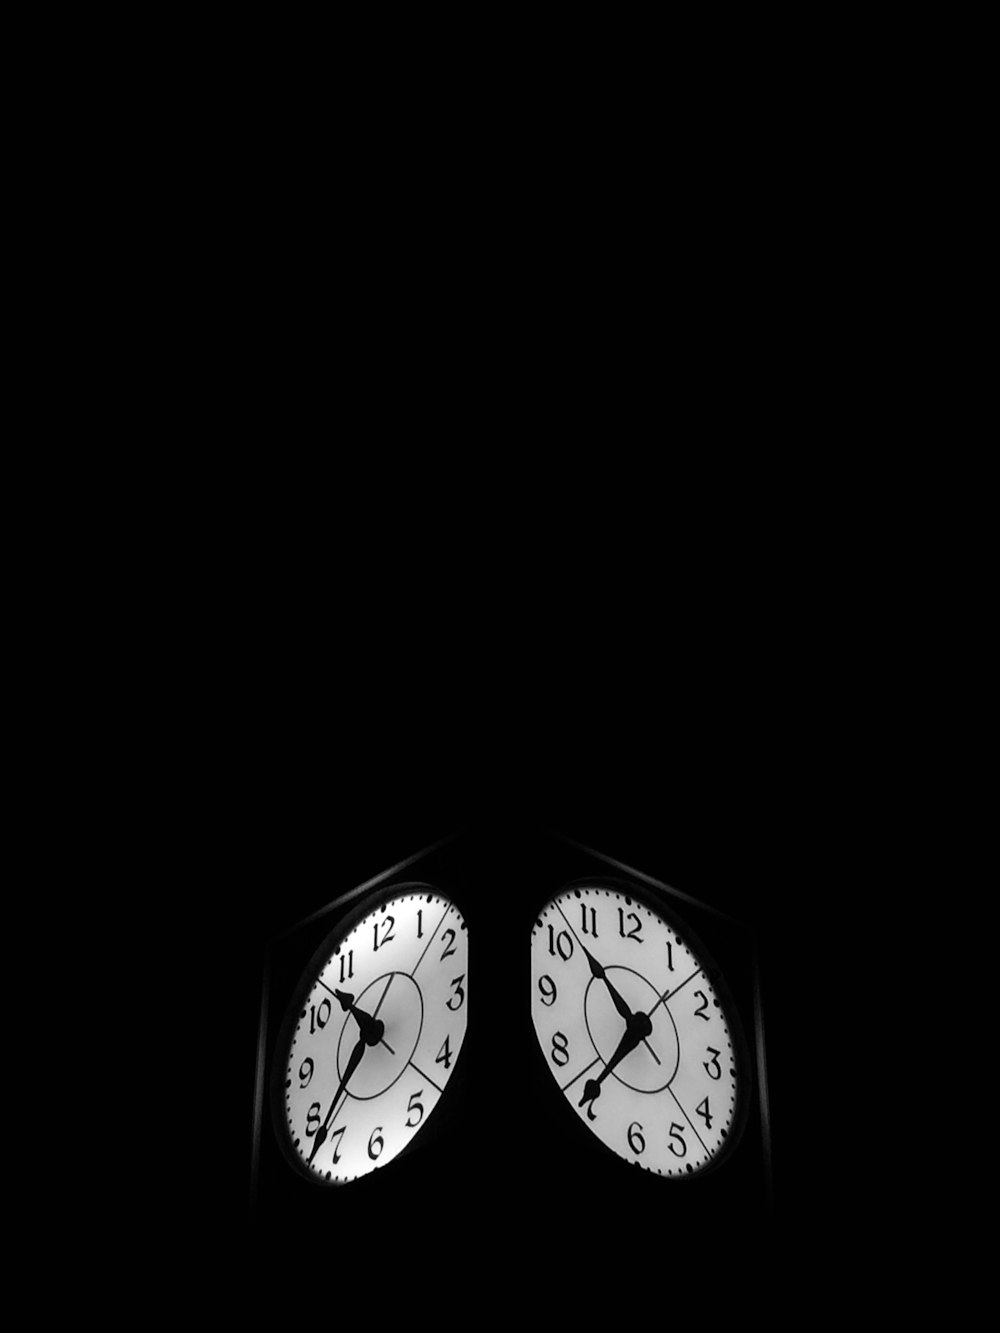 black clock displaying 7:52